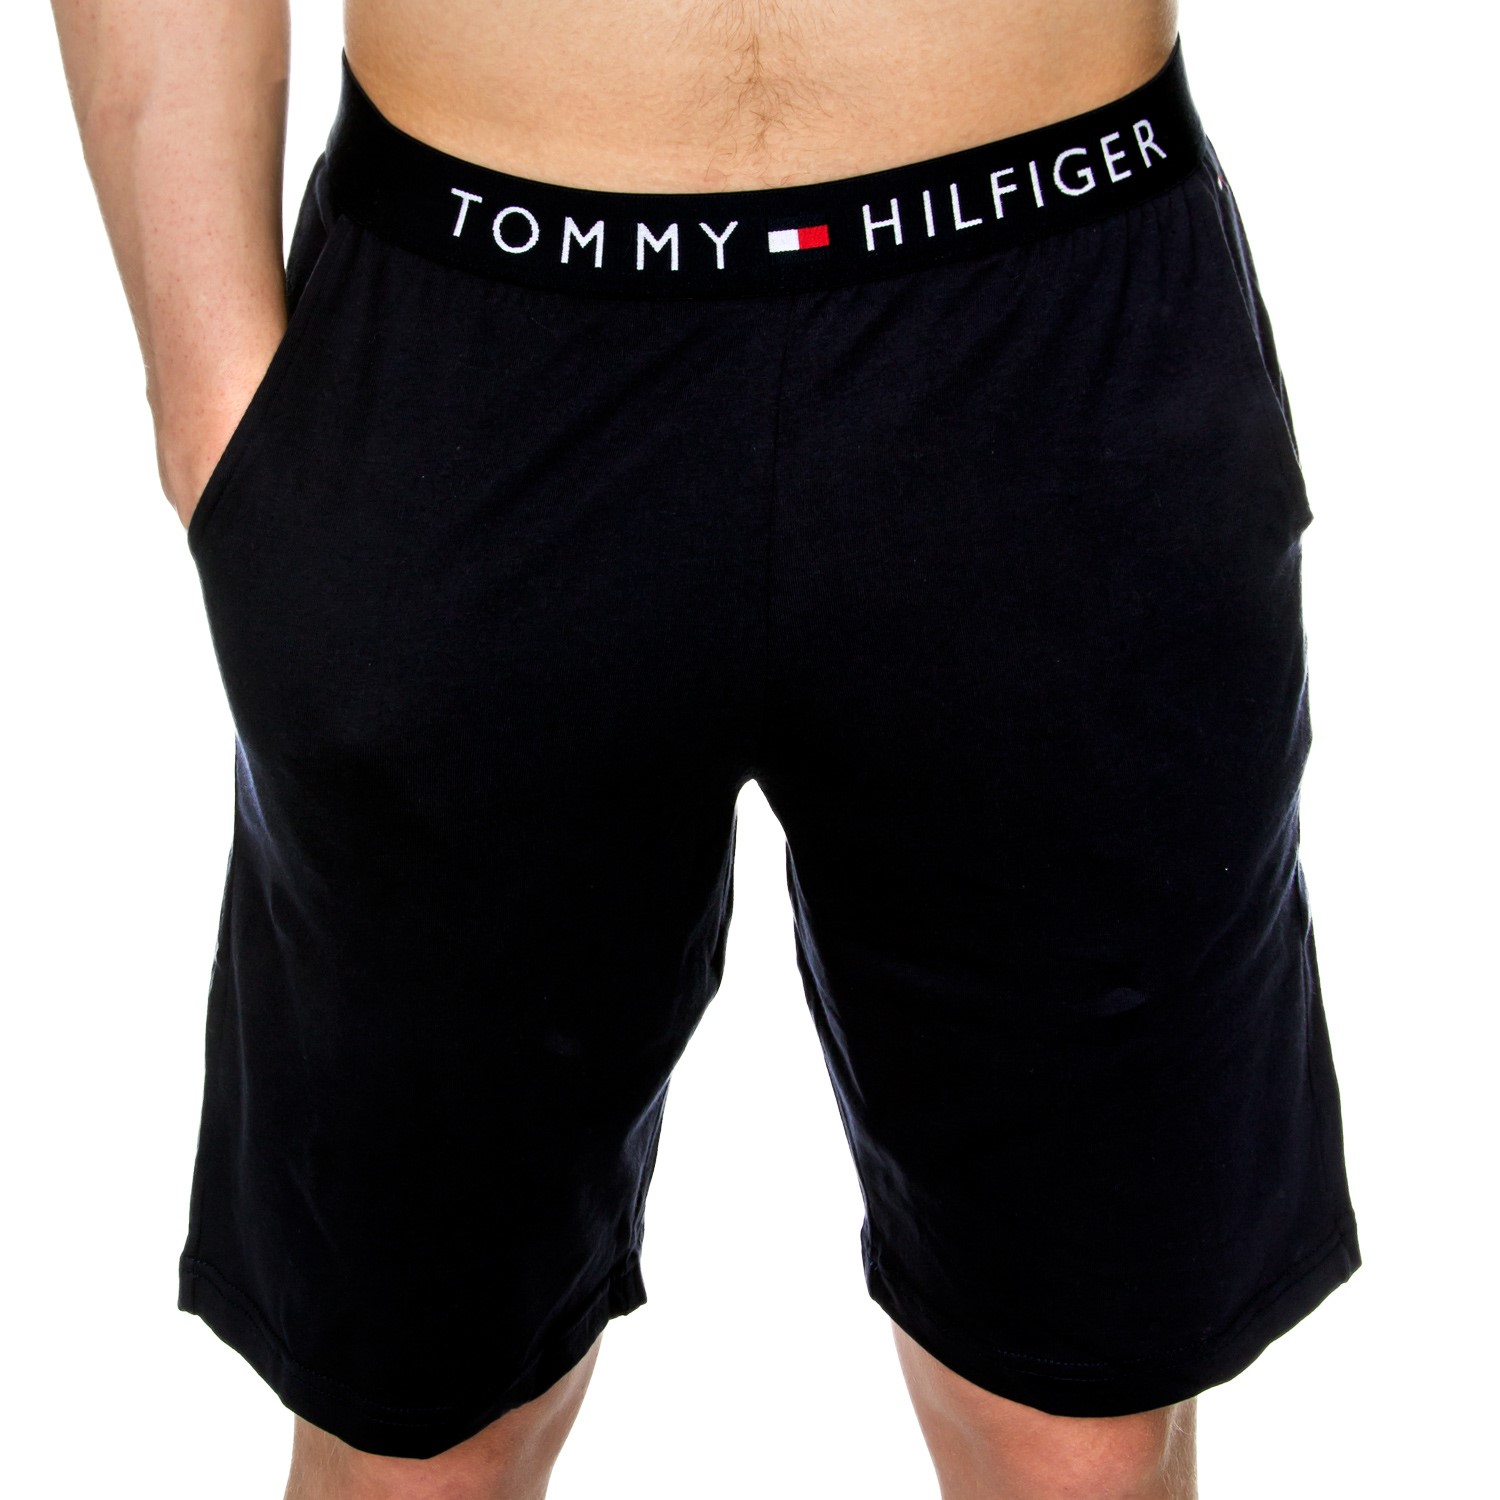 tommy hilfiger short